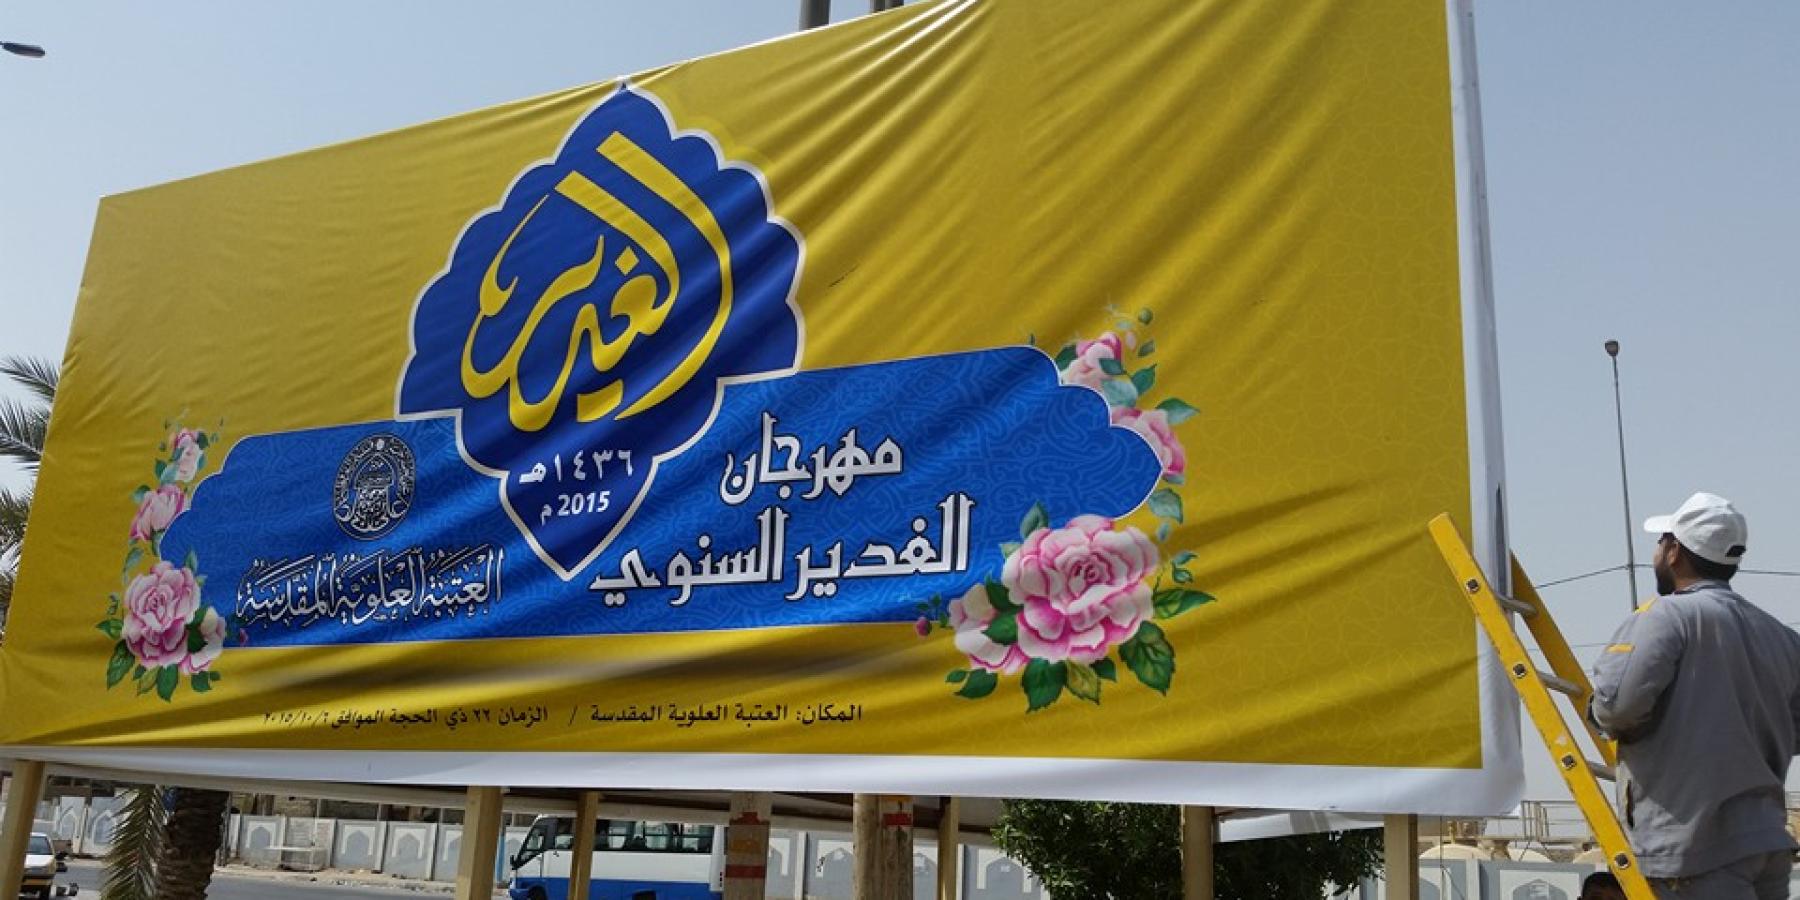 قسم الإعلام في العتبة العلوية المقدسة يباشر بنشر الإعلانات الخاصة بمهرجان الغدير السنوي 